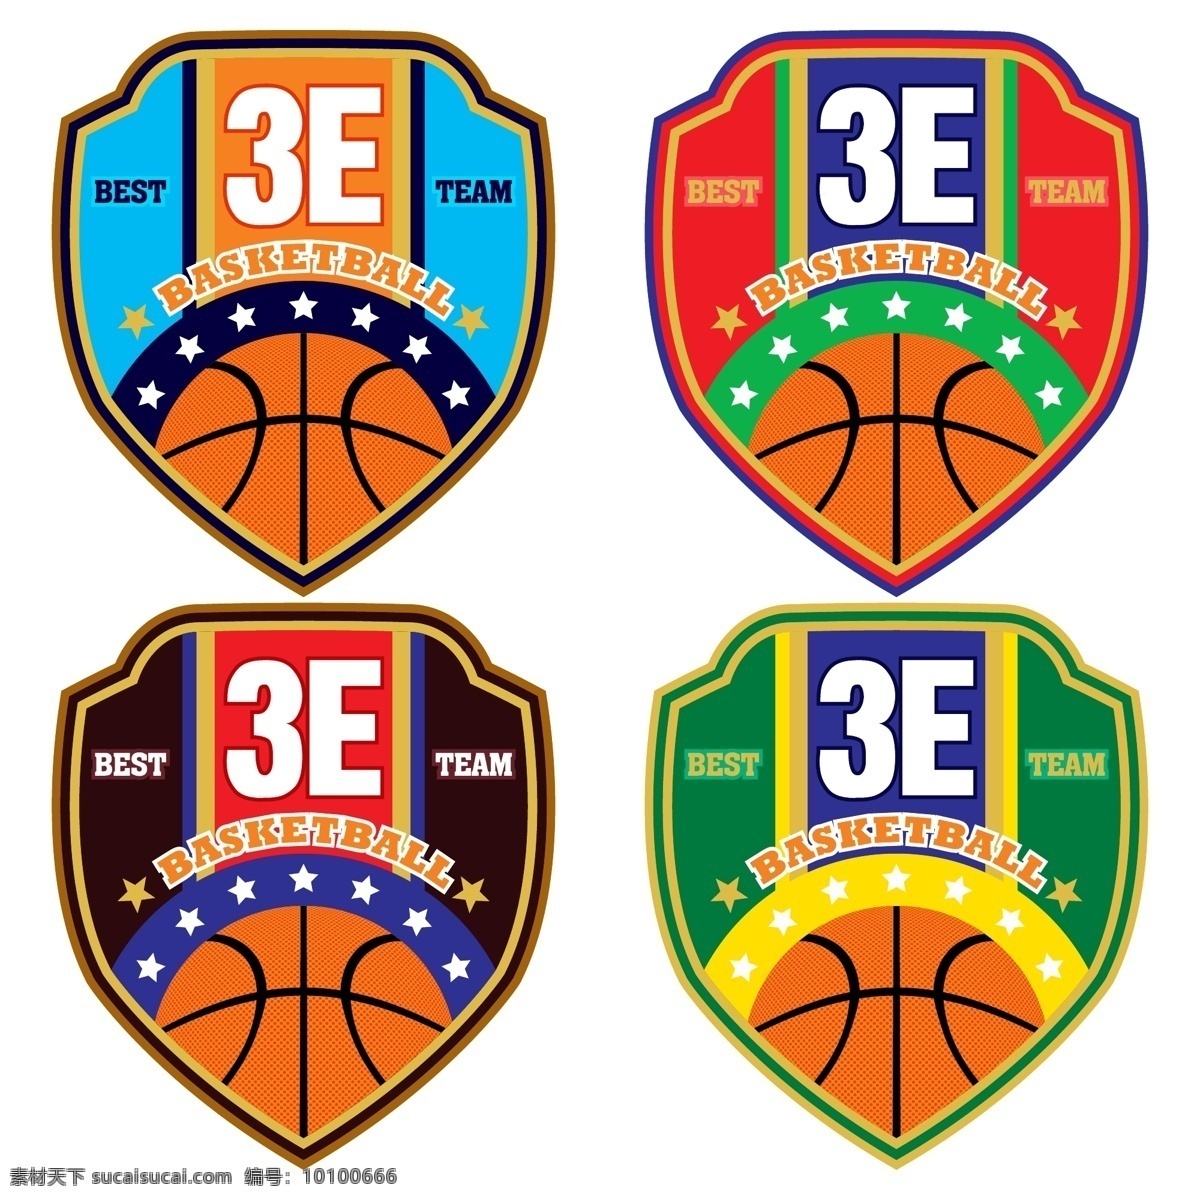 篮球队标 篮球队徽 篮球 篮球运动 篮球图标 篮球标志 篮球logo 篮球设计 nba cba 体育运动 体育 篮球比赛 时尚背景 绚丽背景 背景素材 网页小图标 标志图标